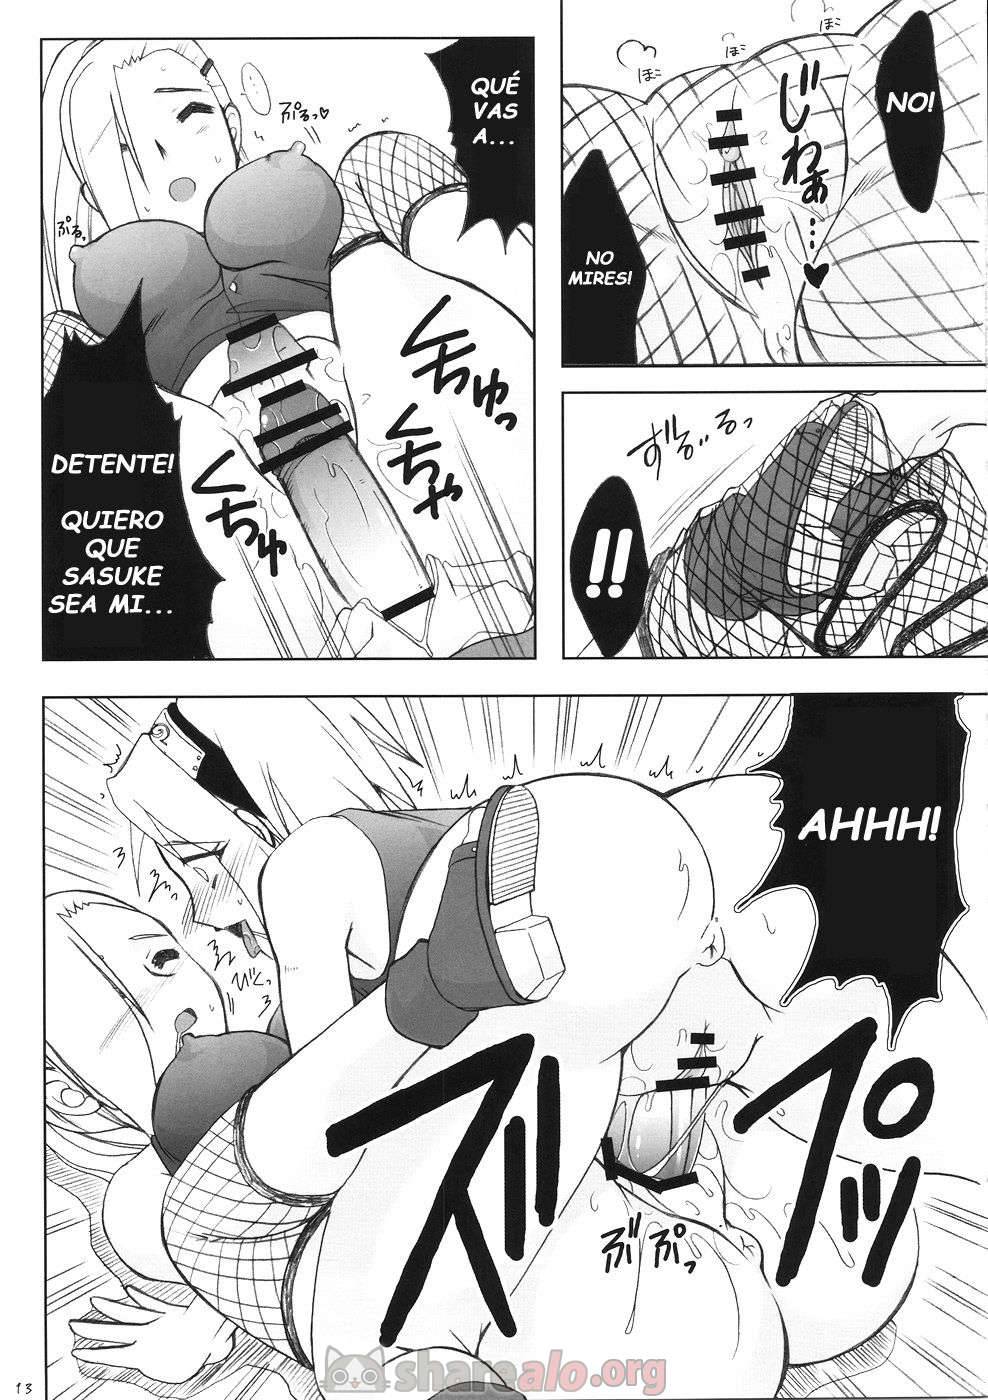 Futanari Kokoro Tenshin (Sakura se Folla a Ino Yamanaka) - 13 - Comics Porno - Hentai Manga - Cartoon XXX